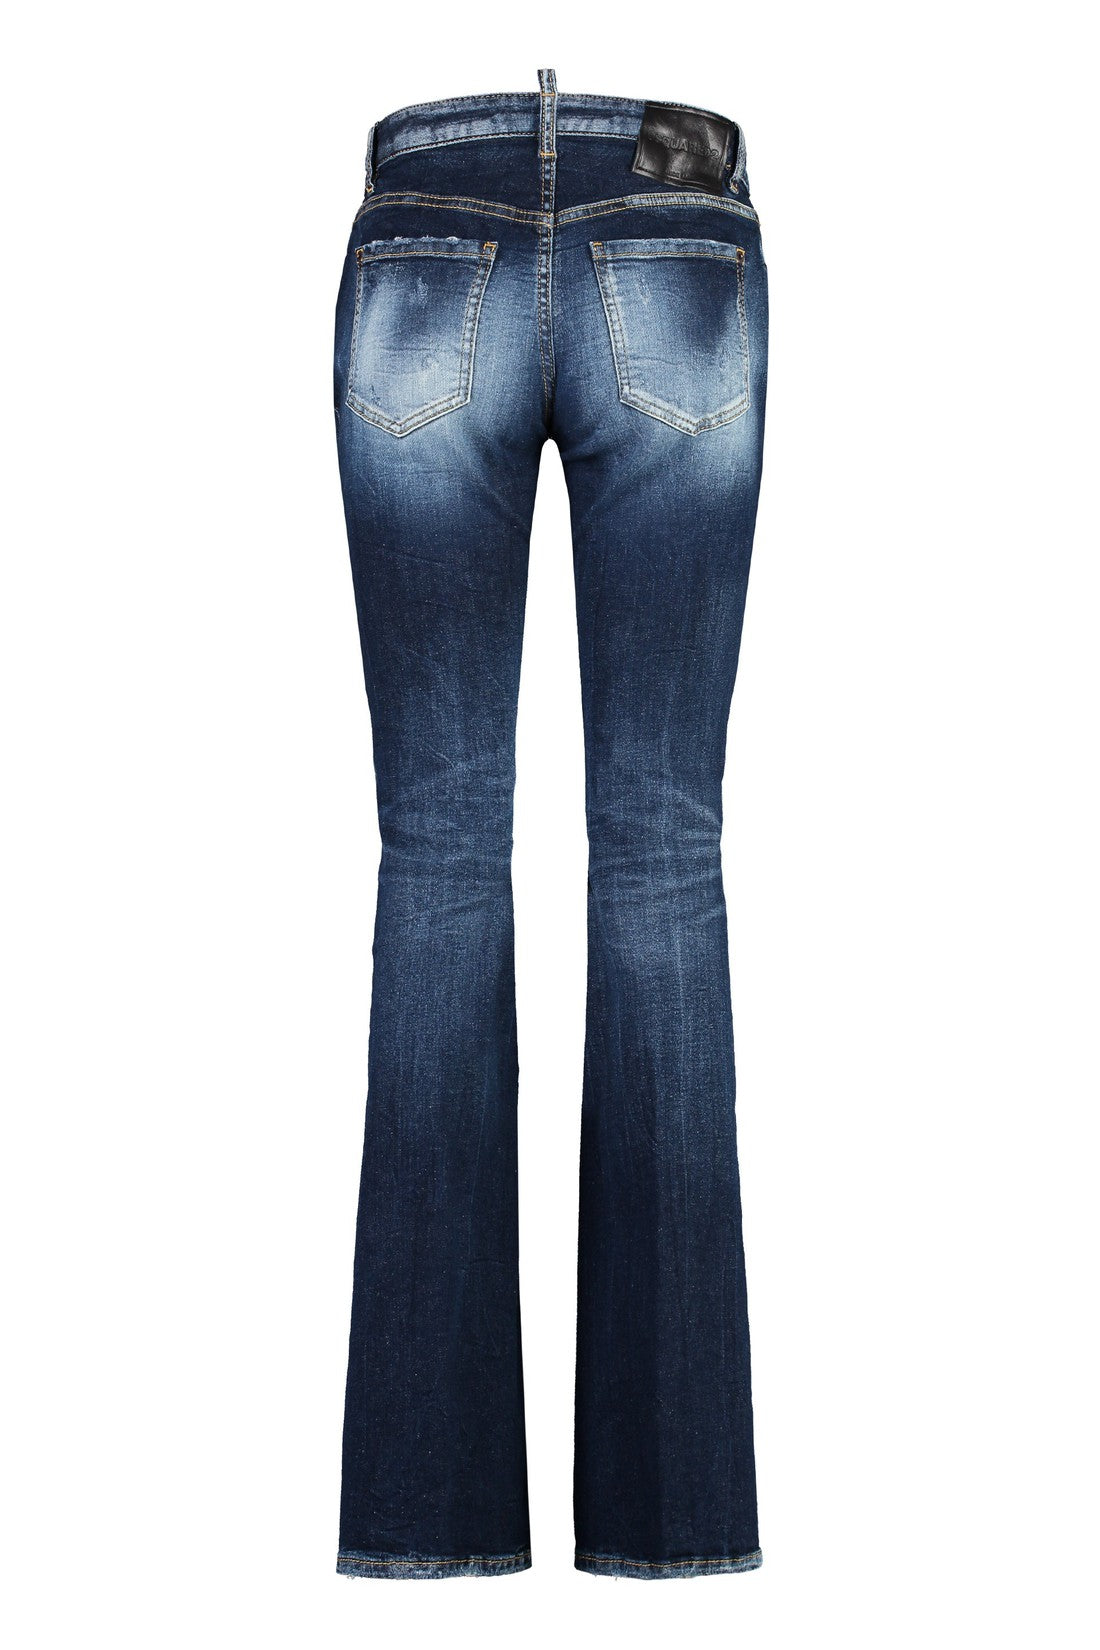 Dsquared2-OUTLET-SALE-Twiggy jeans-ARCHIVIST